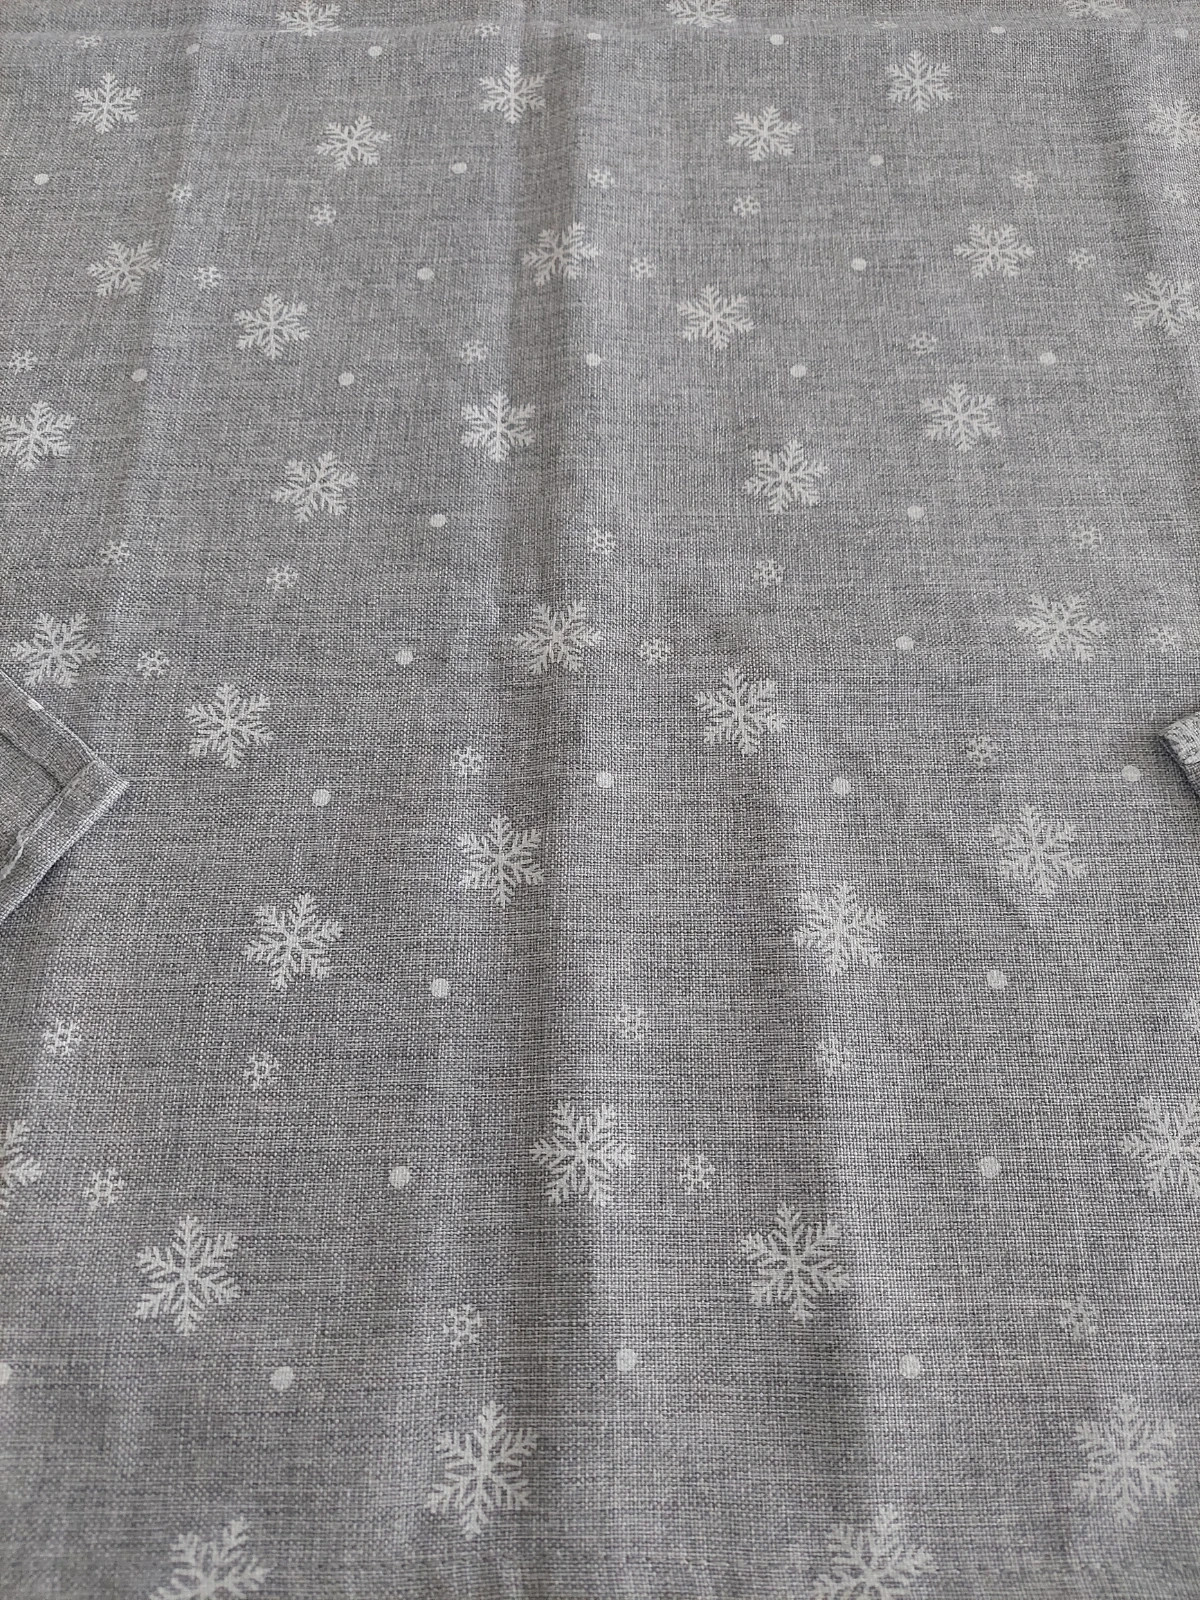 Obrus świąteczny Boże Narodzenie "Śnieżka " kolor szary w białe gwiazdki roz 85×85